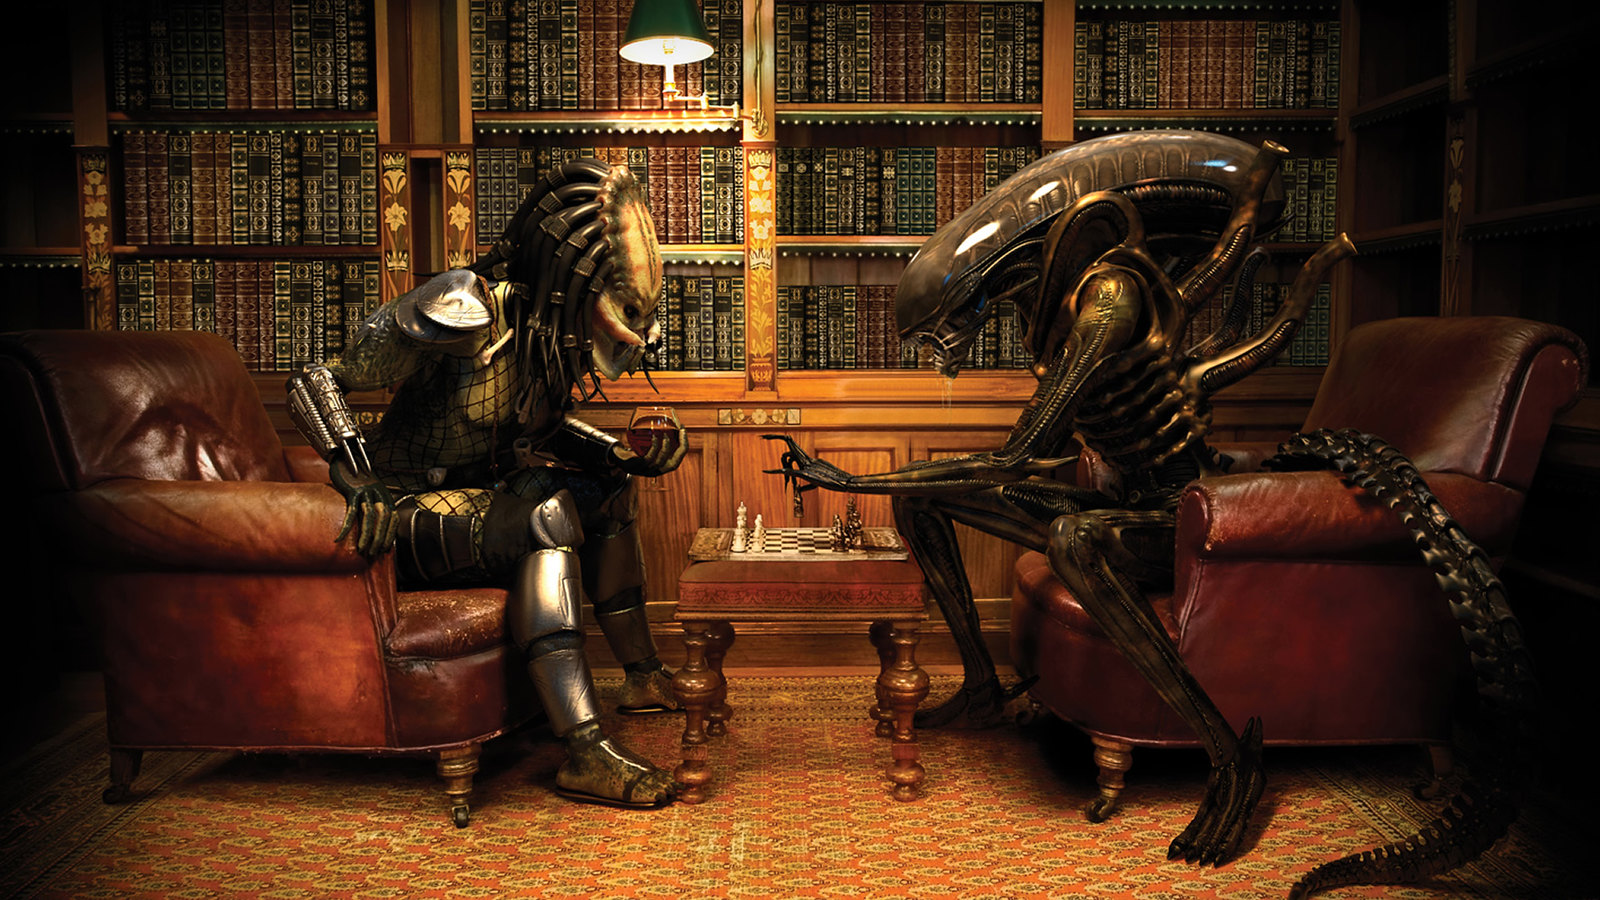 Alien vs Predator Funny wallpaper 1920x1080, bentleykevin18